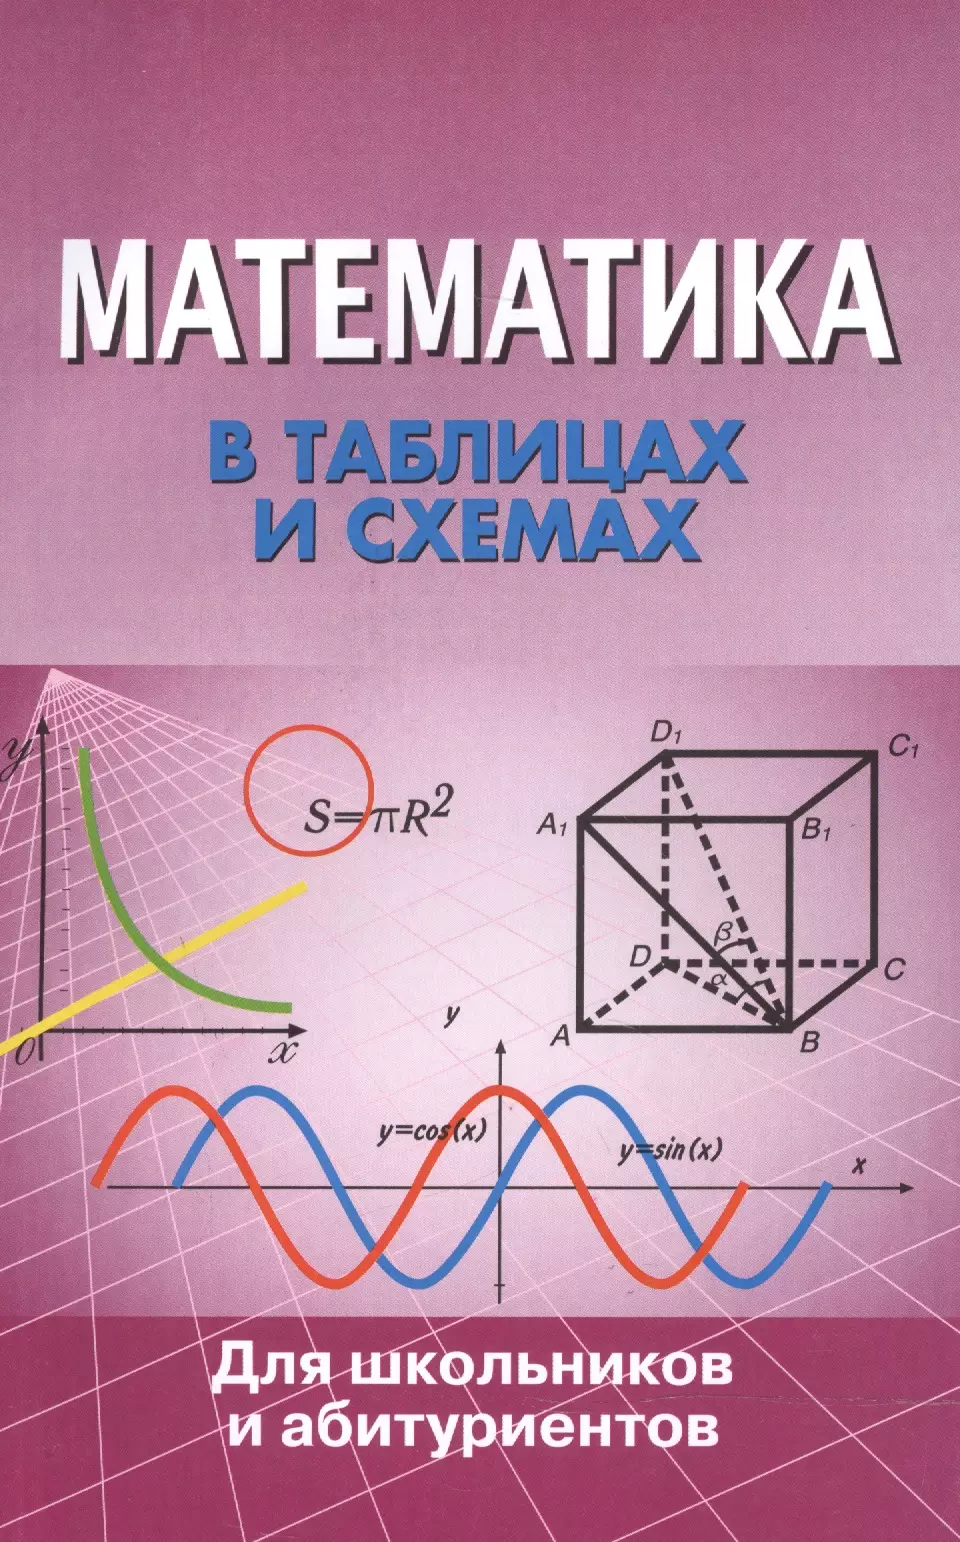 Математика в таблицах и схемах для школьников и абитуриентов касатикова е сост химия в таблицах и схемах для школьников и абитуриентов